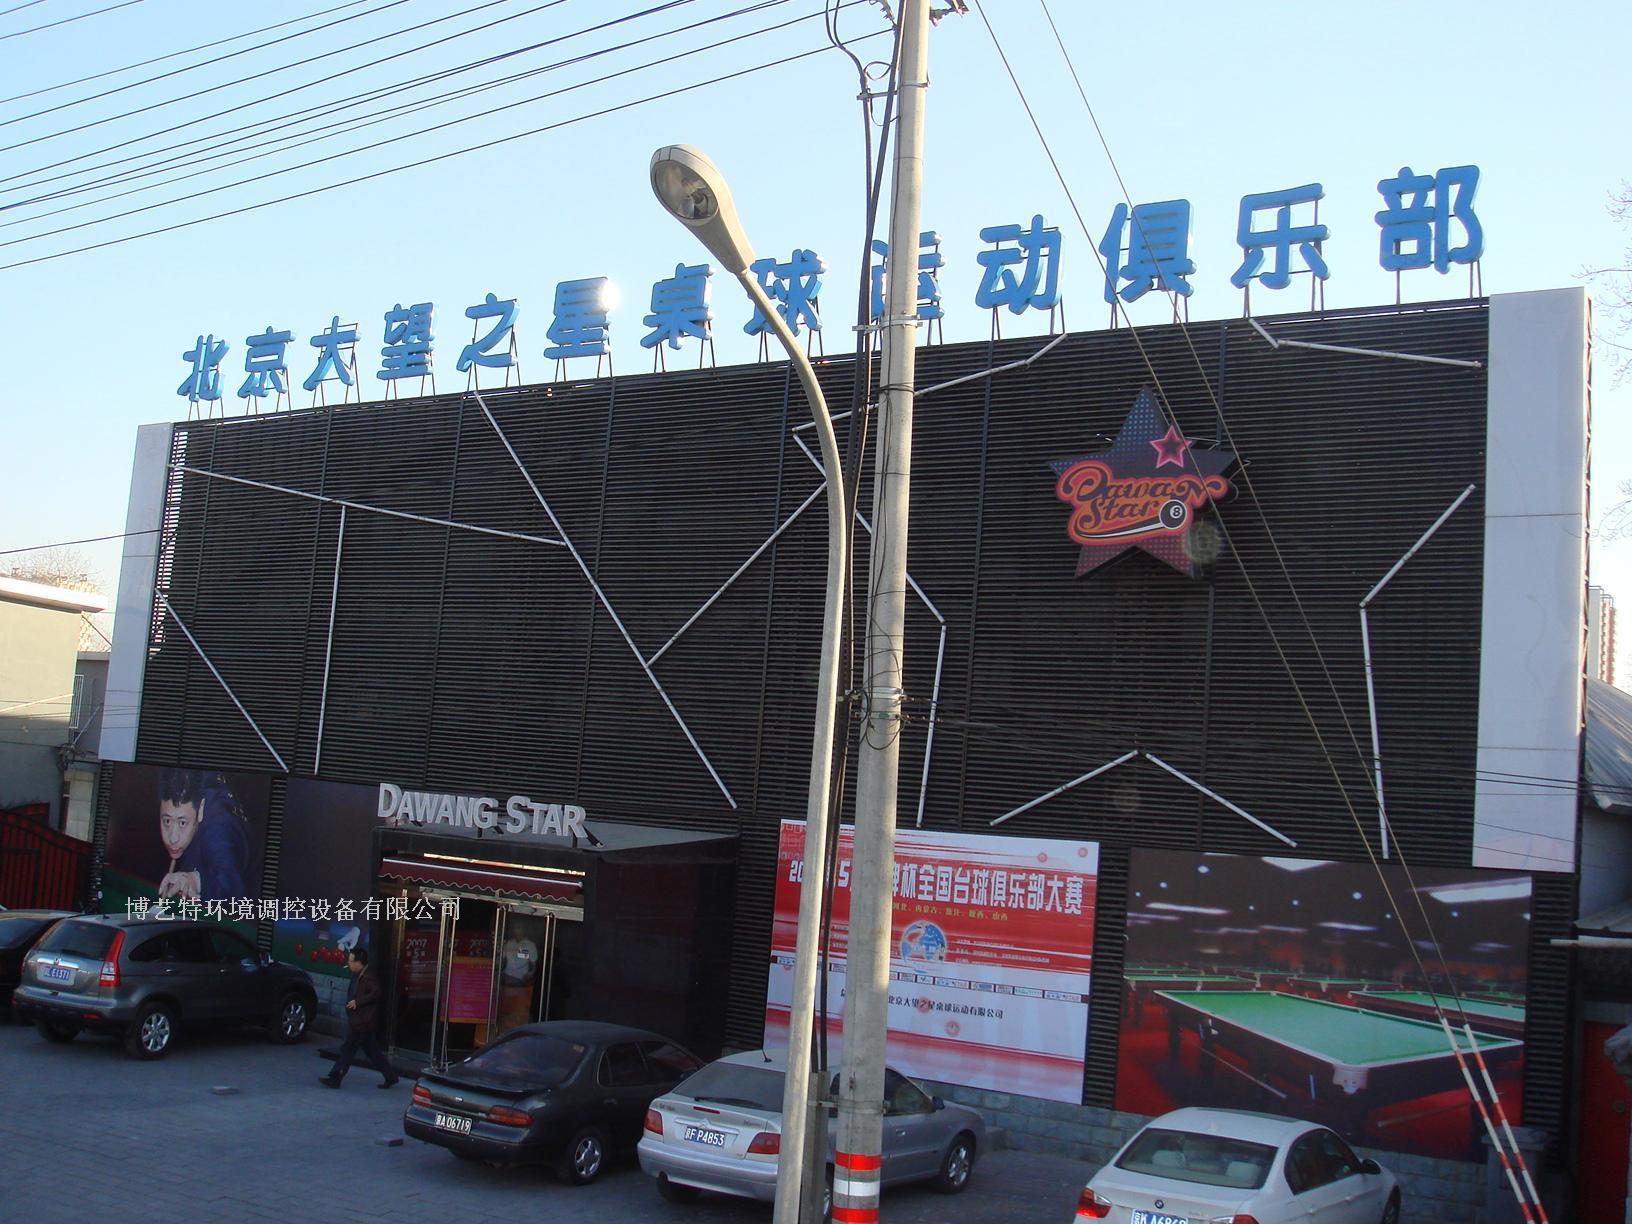 北京大望之星桌球运动俱乐部